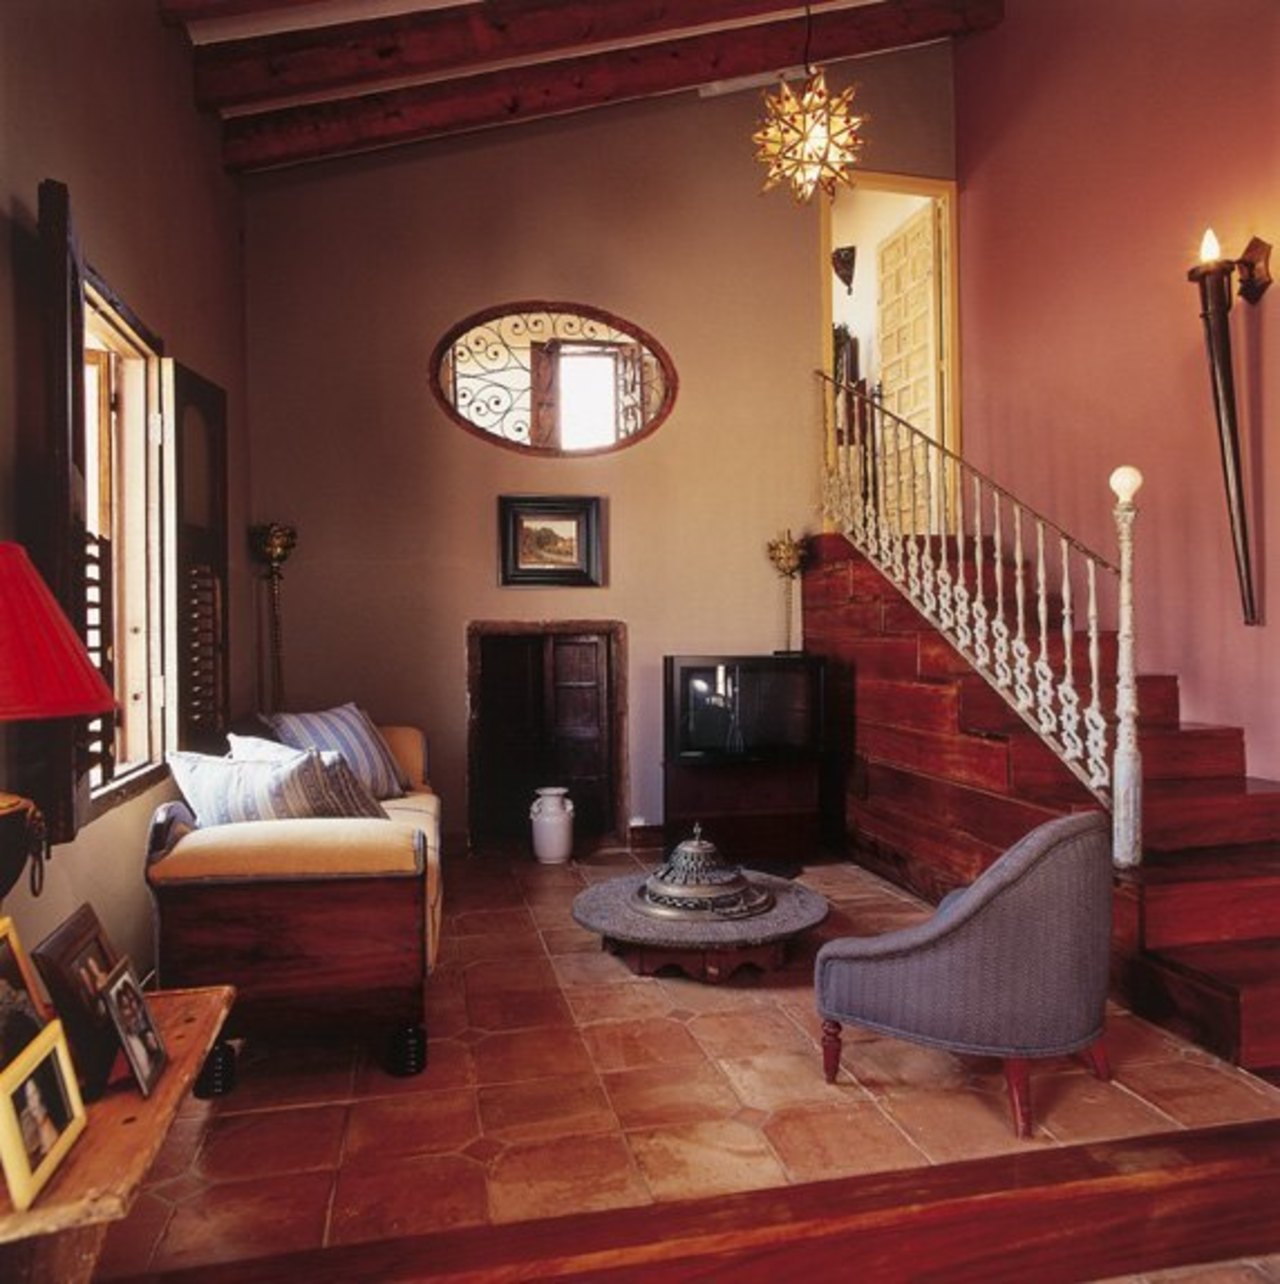 SWDC5888: Villa for sale in Torremendo